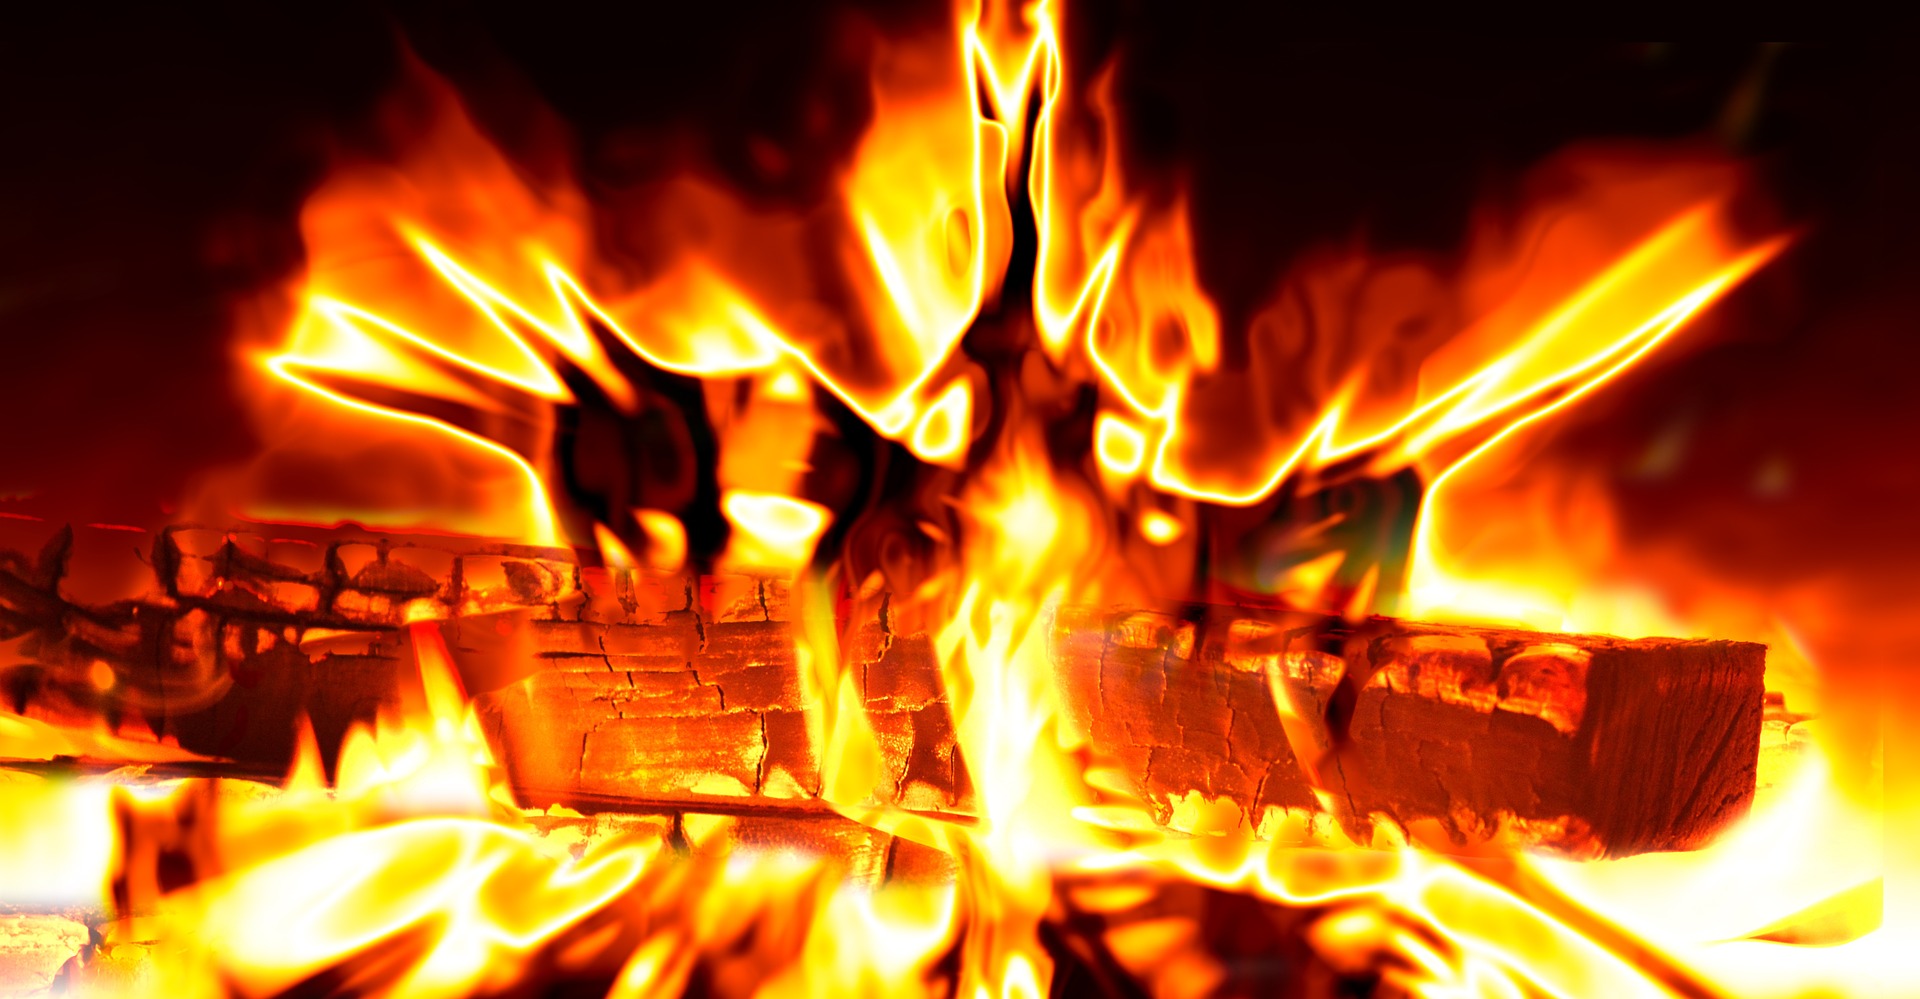 Fire von Gerd Altmann bei Pixabay